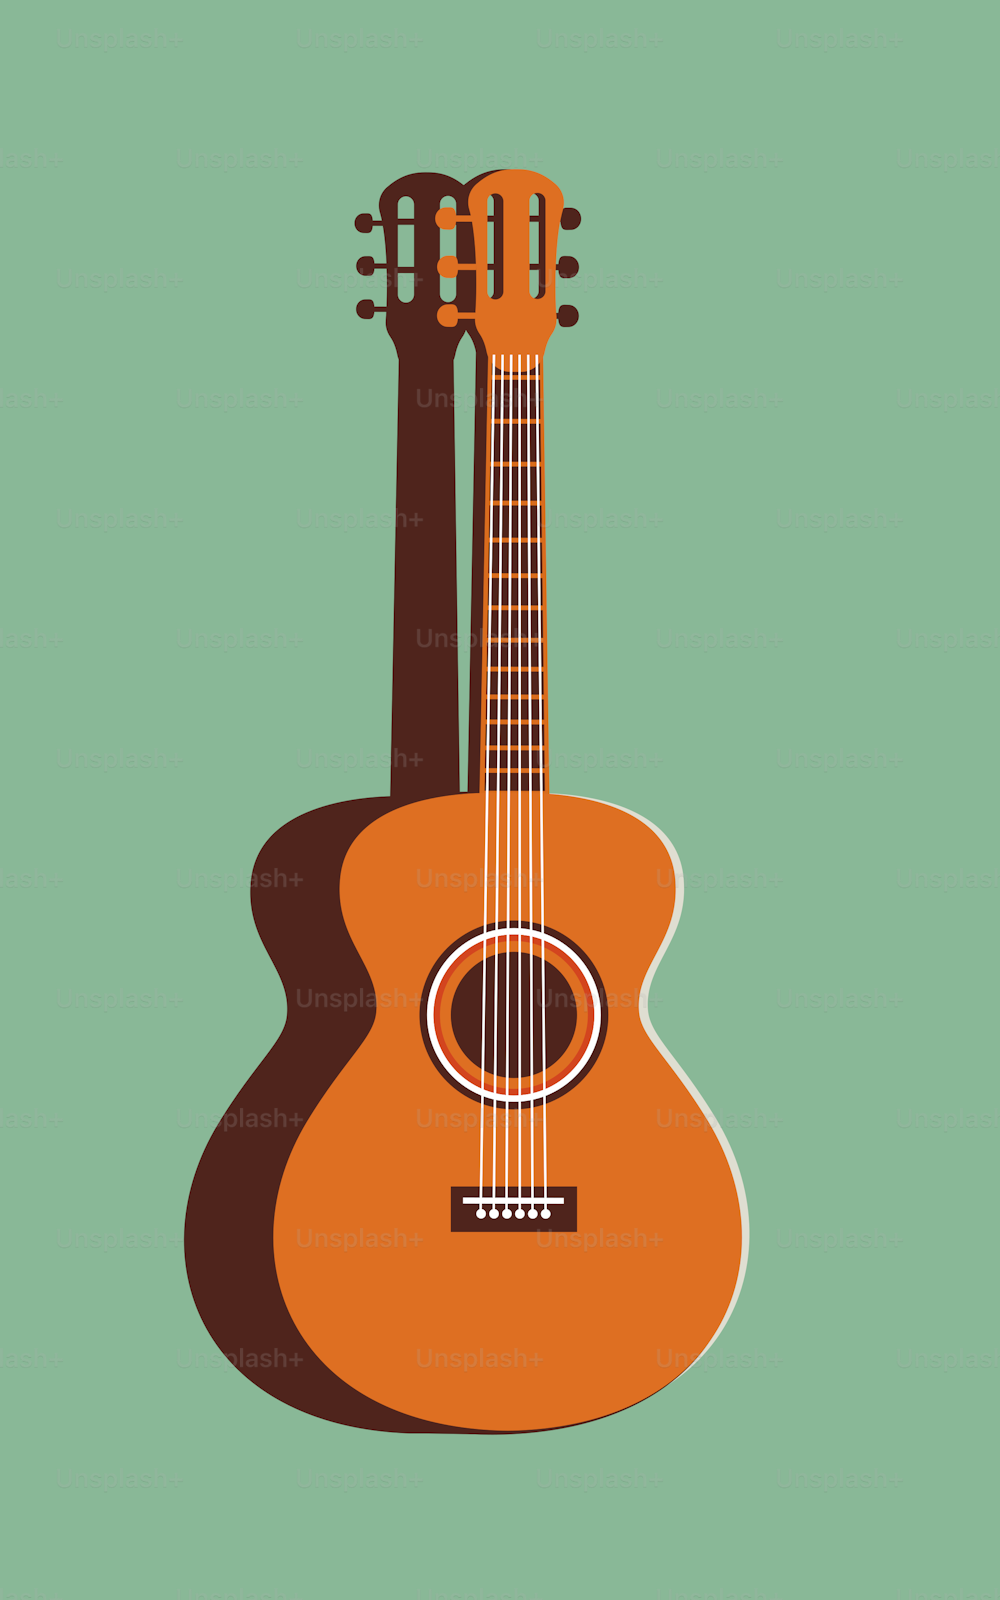 Ilustración vectorial de una guitarra sobre un fondo verde menta. Ilustración minimalista en colores de moda. Concepto musical.